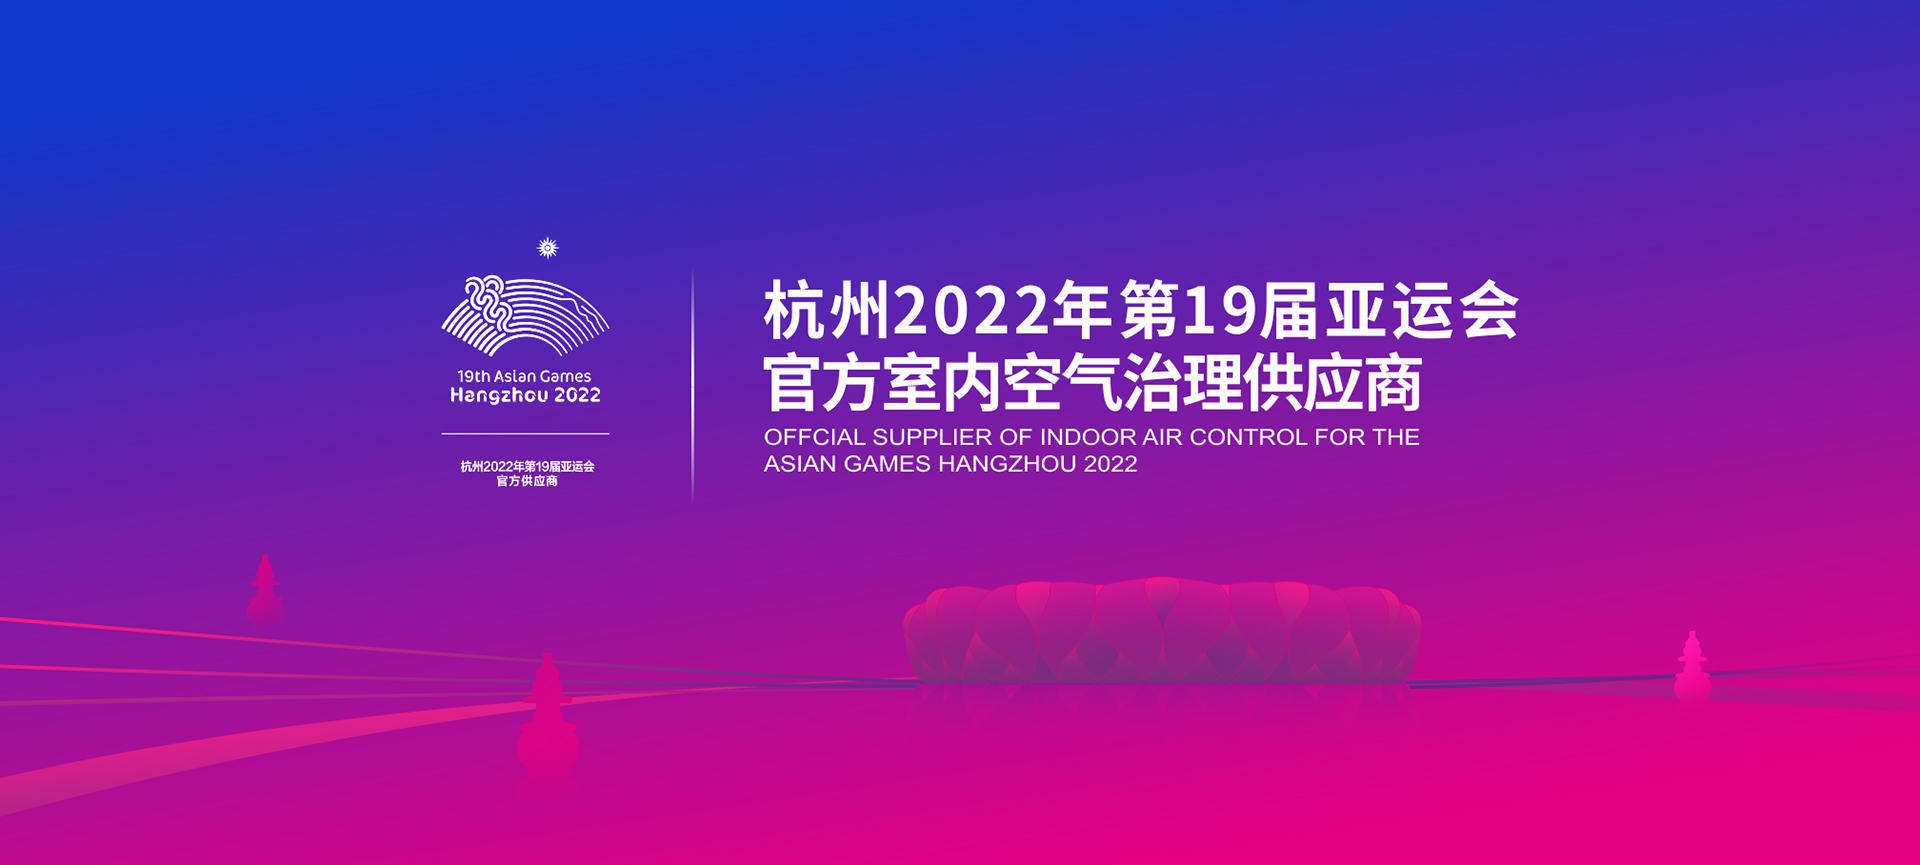 2022年亚运会官方室内空气治理供应商